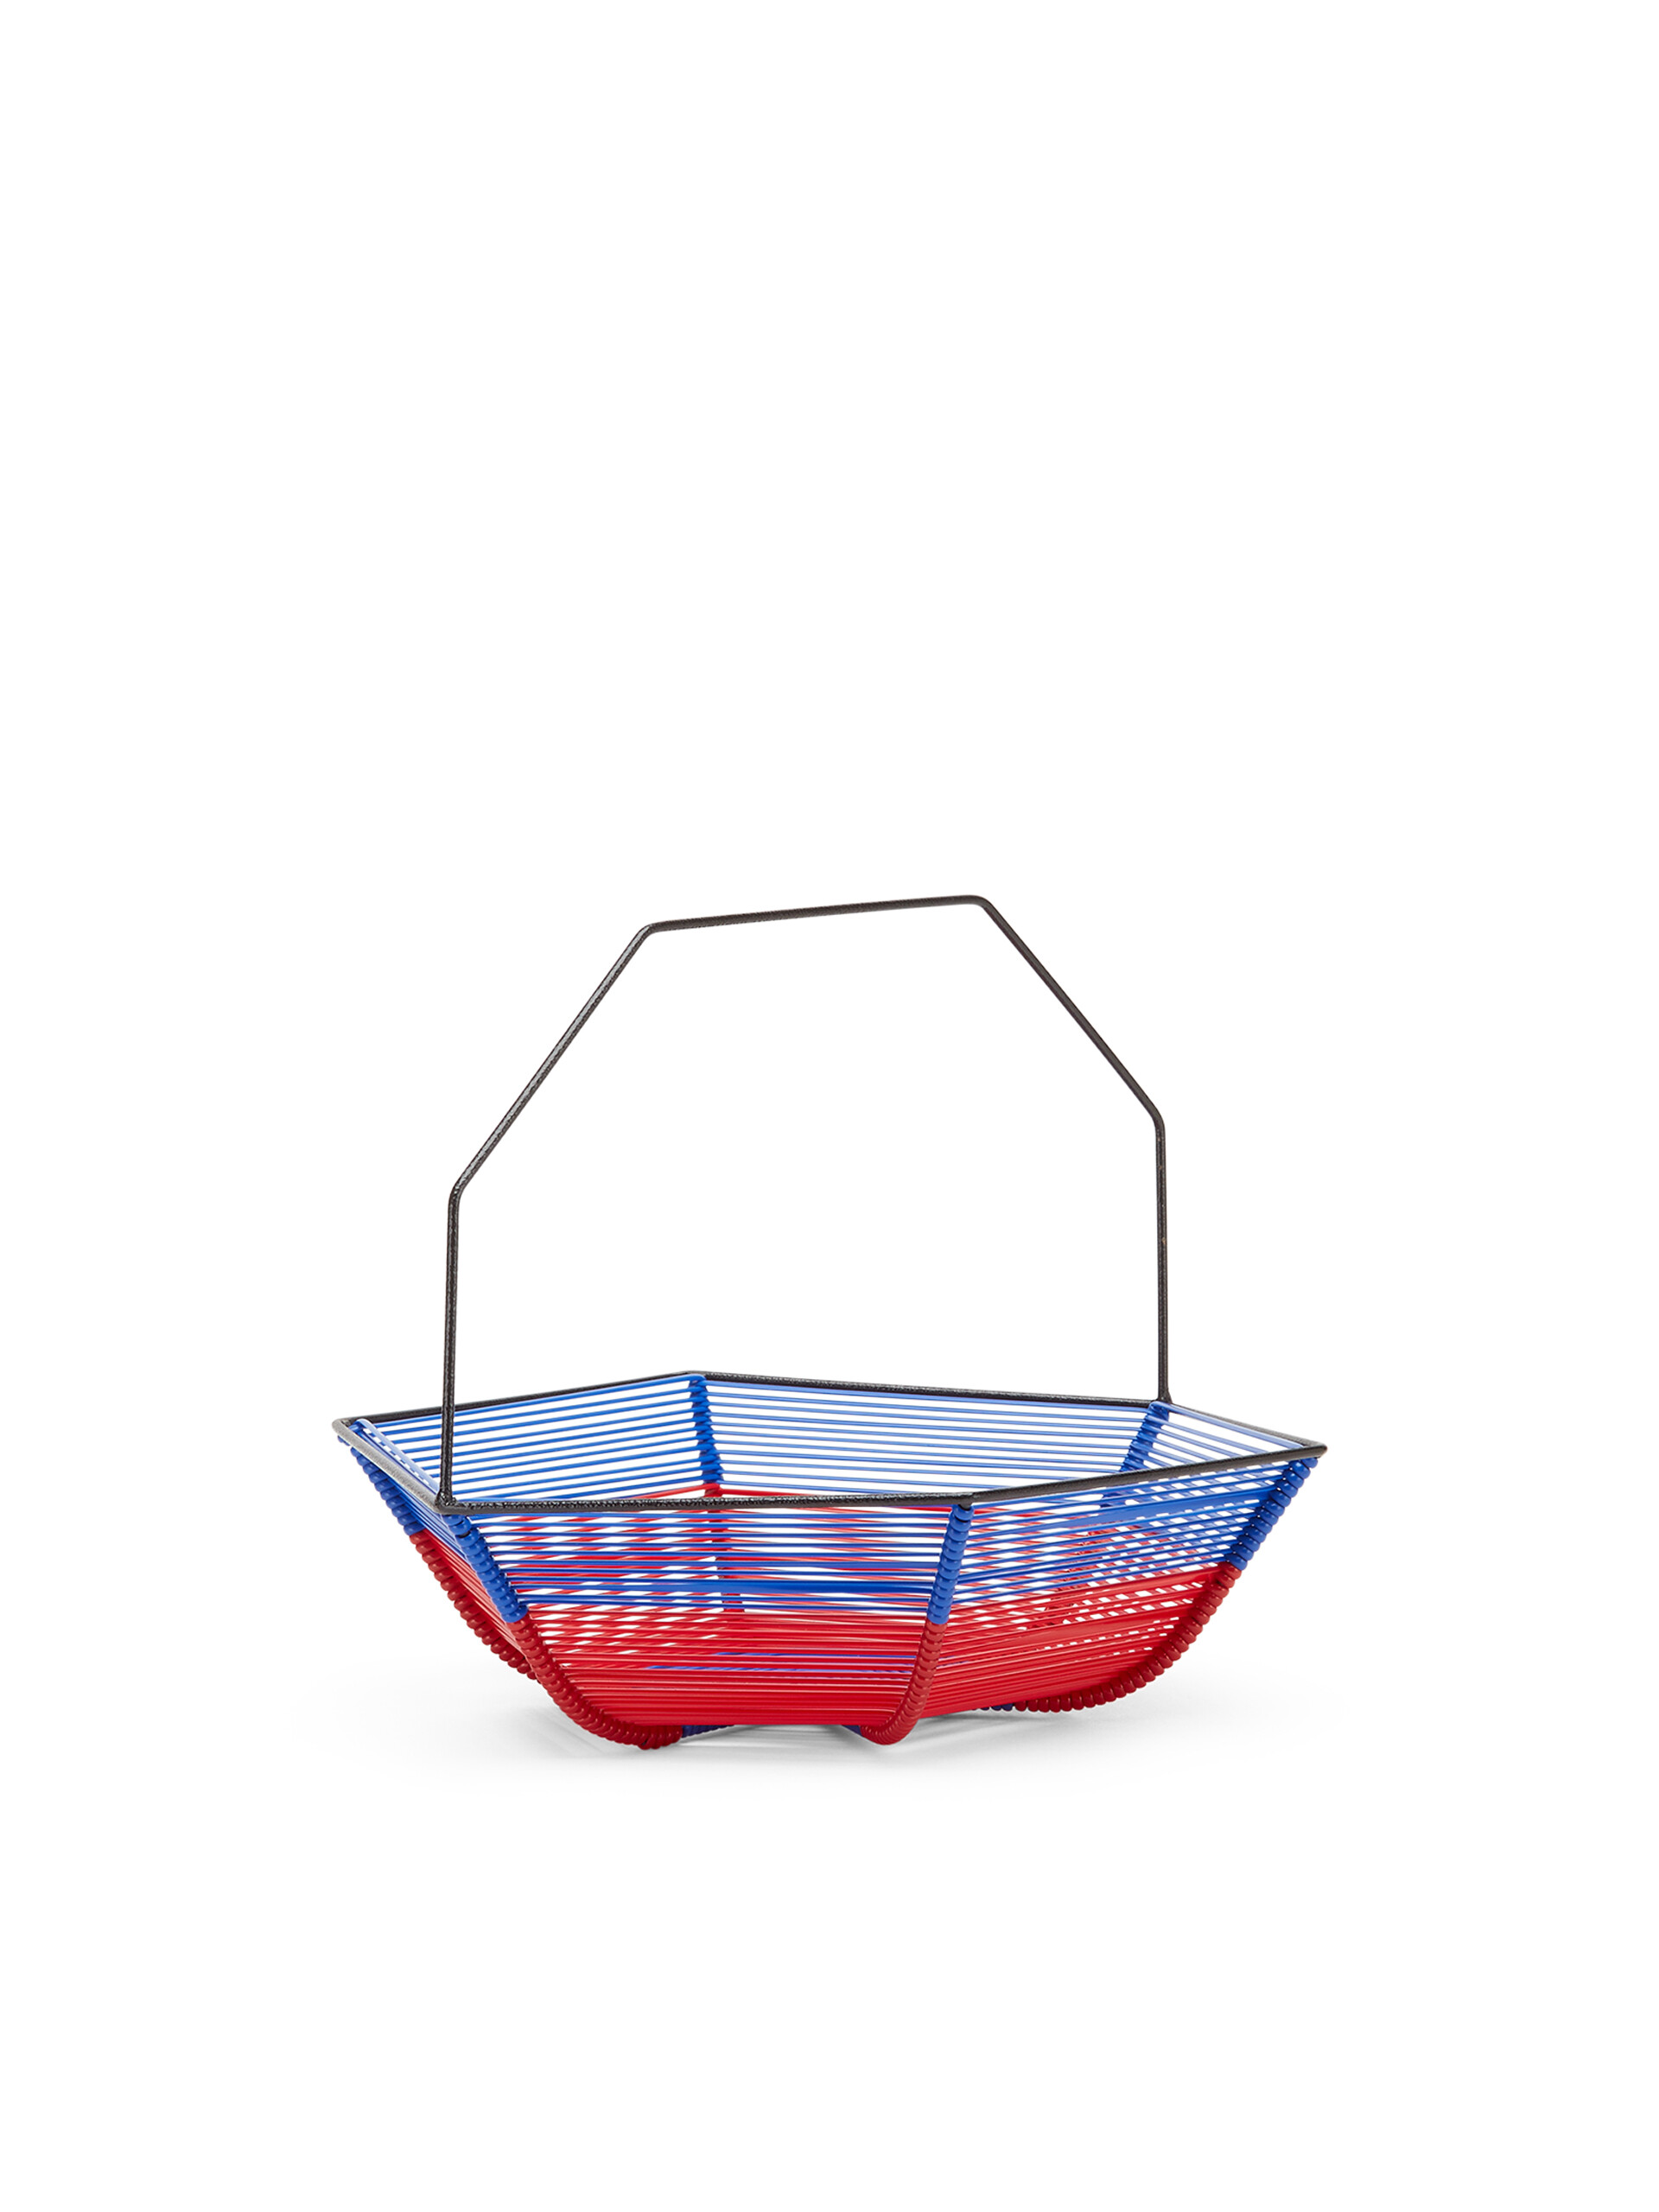 Corbeille à fruits hexagonale MARNI MARKET bleu et rouge - Accessoires - Image 2